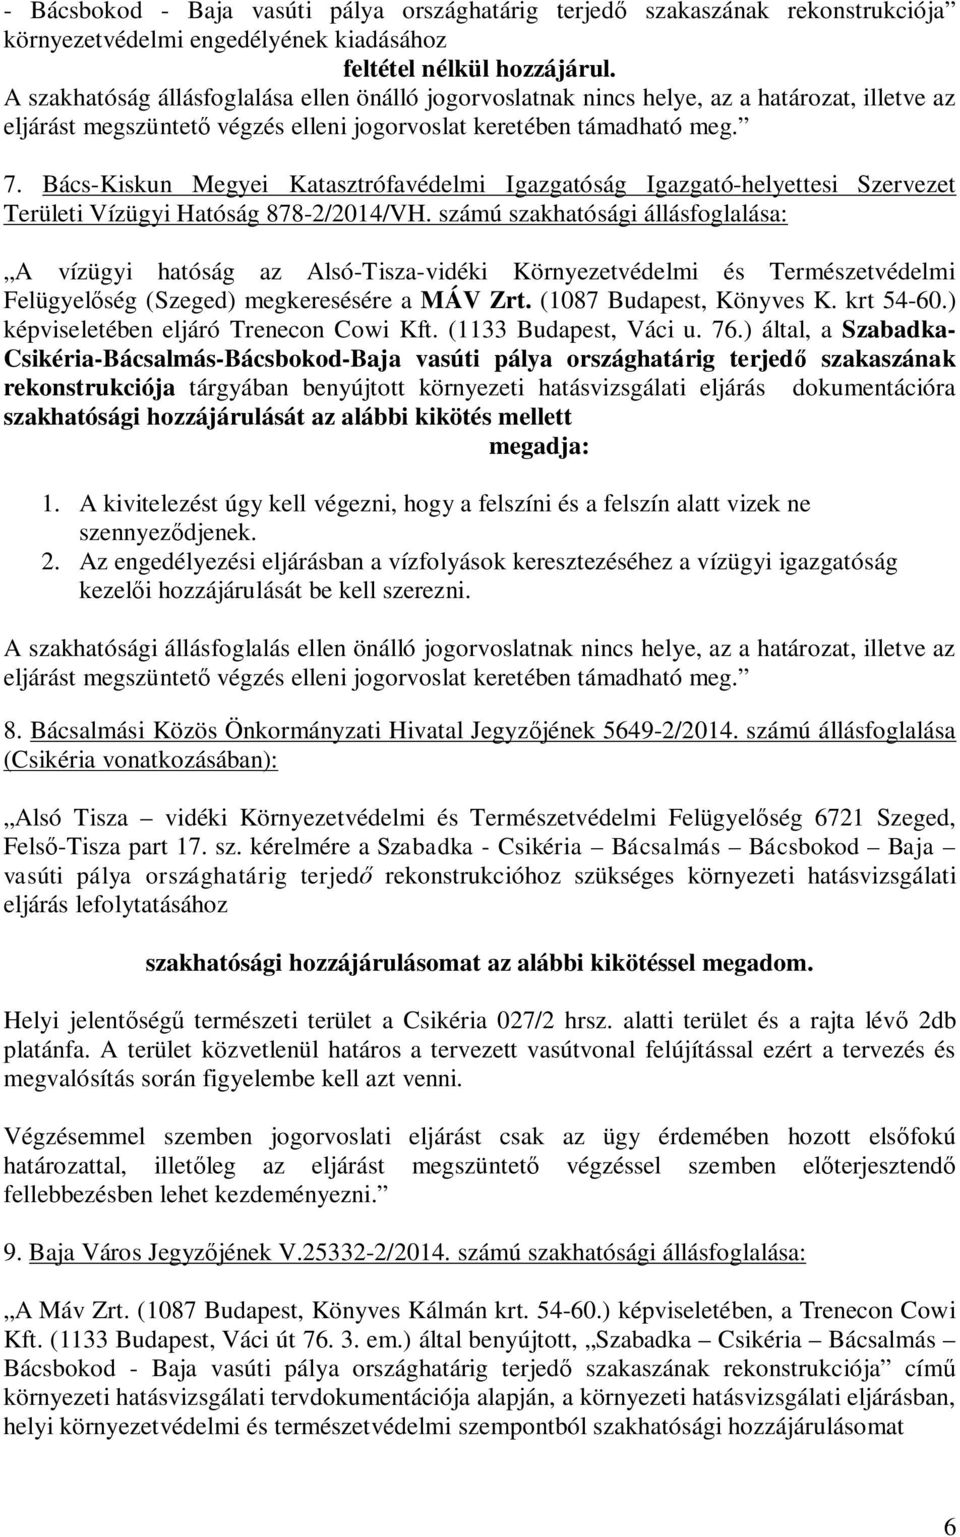 Bács-Kiskun Megyei Katasztrófavédelmi Igazgatóság Igazgató-helyettesi Szervezet Területi Vízügyi Hatóság 878-2/2014/VH.